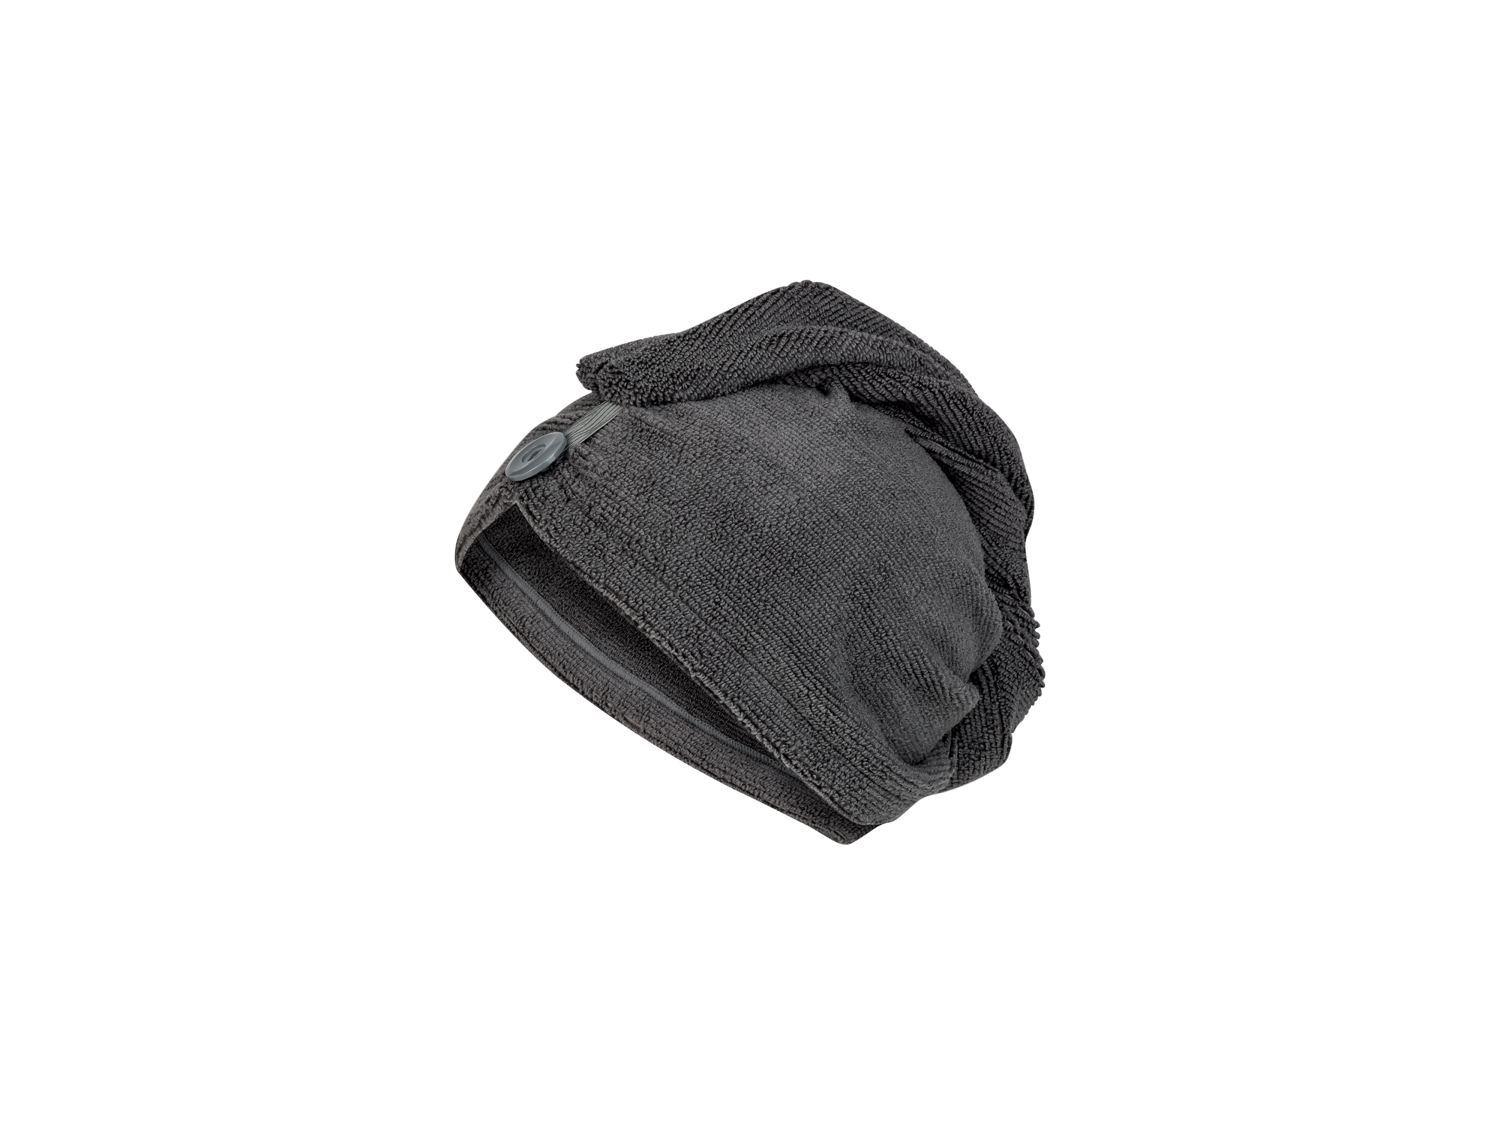 Serviette-turban en éponge , le prix 2.99 € 
- Env. 60 x 20 cm.
- Ex. 90 % ...